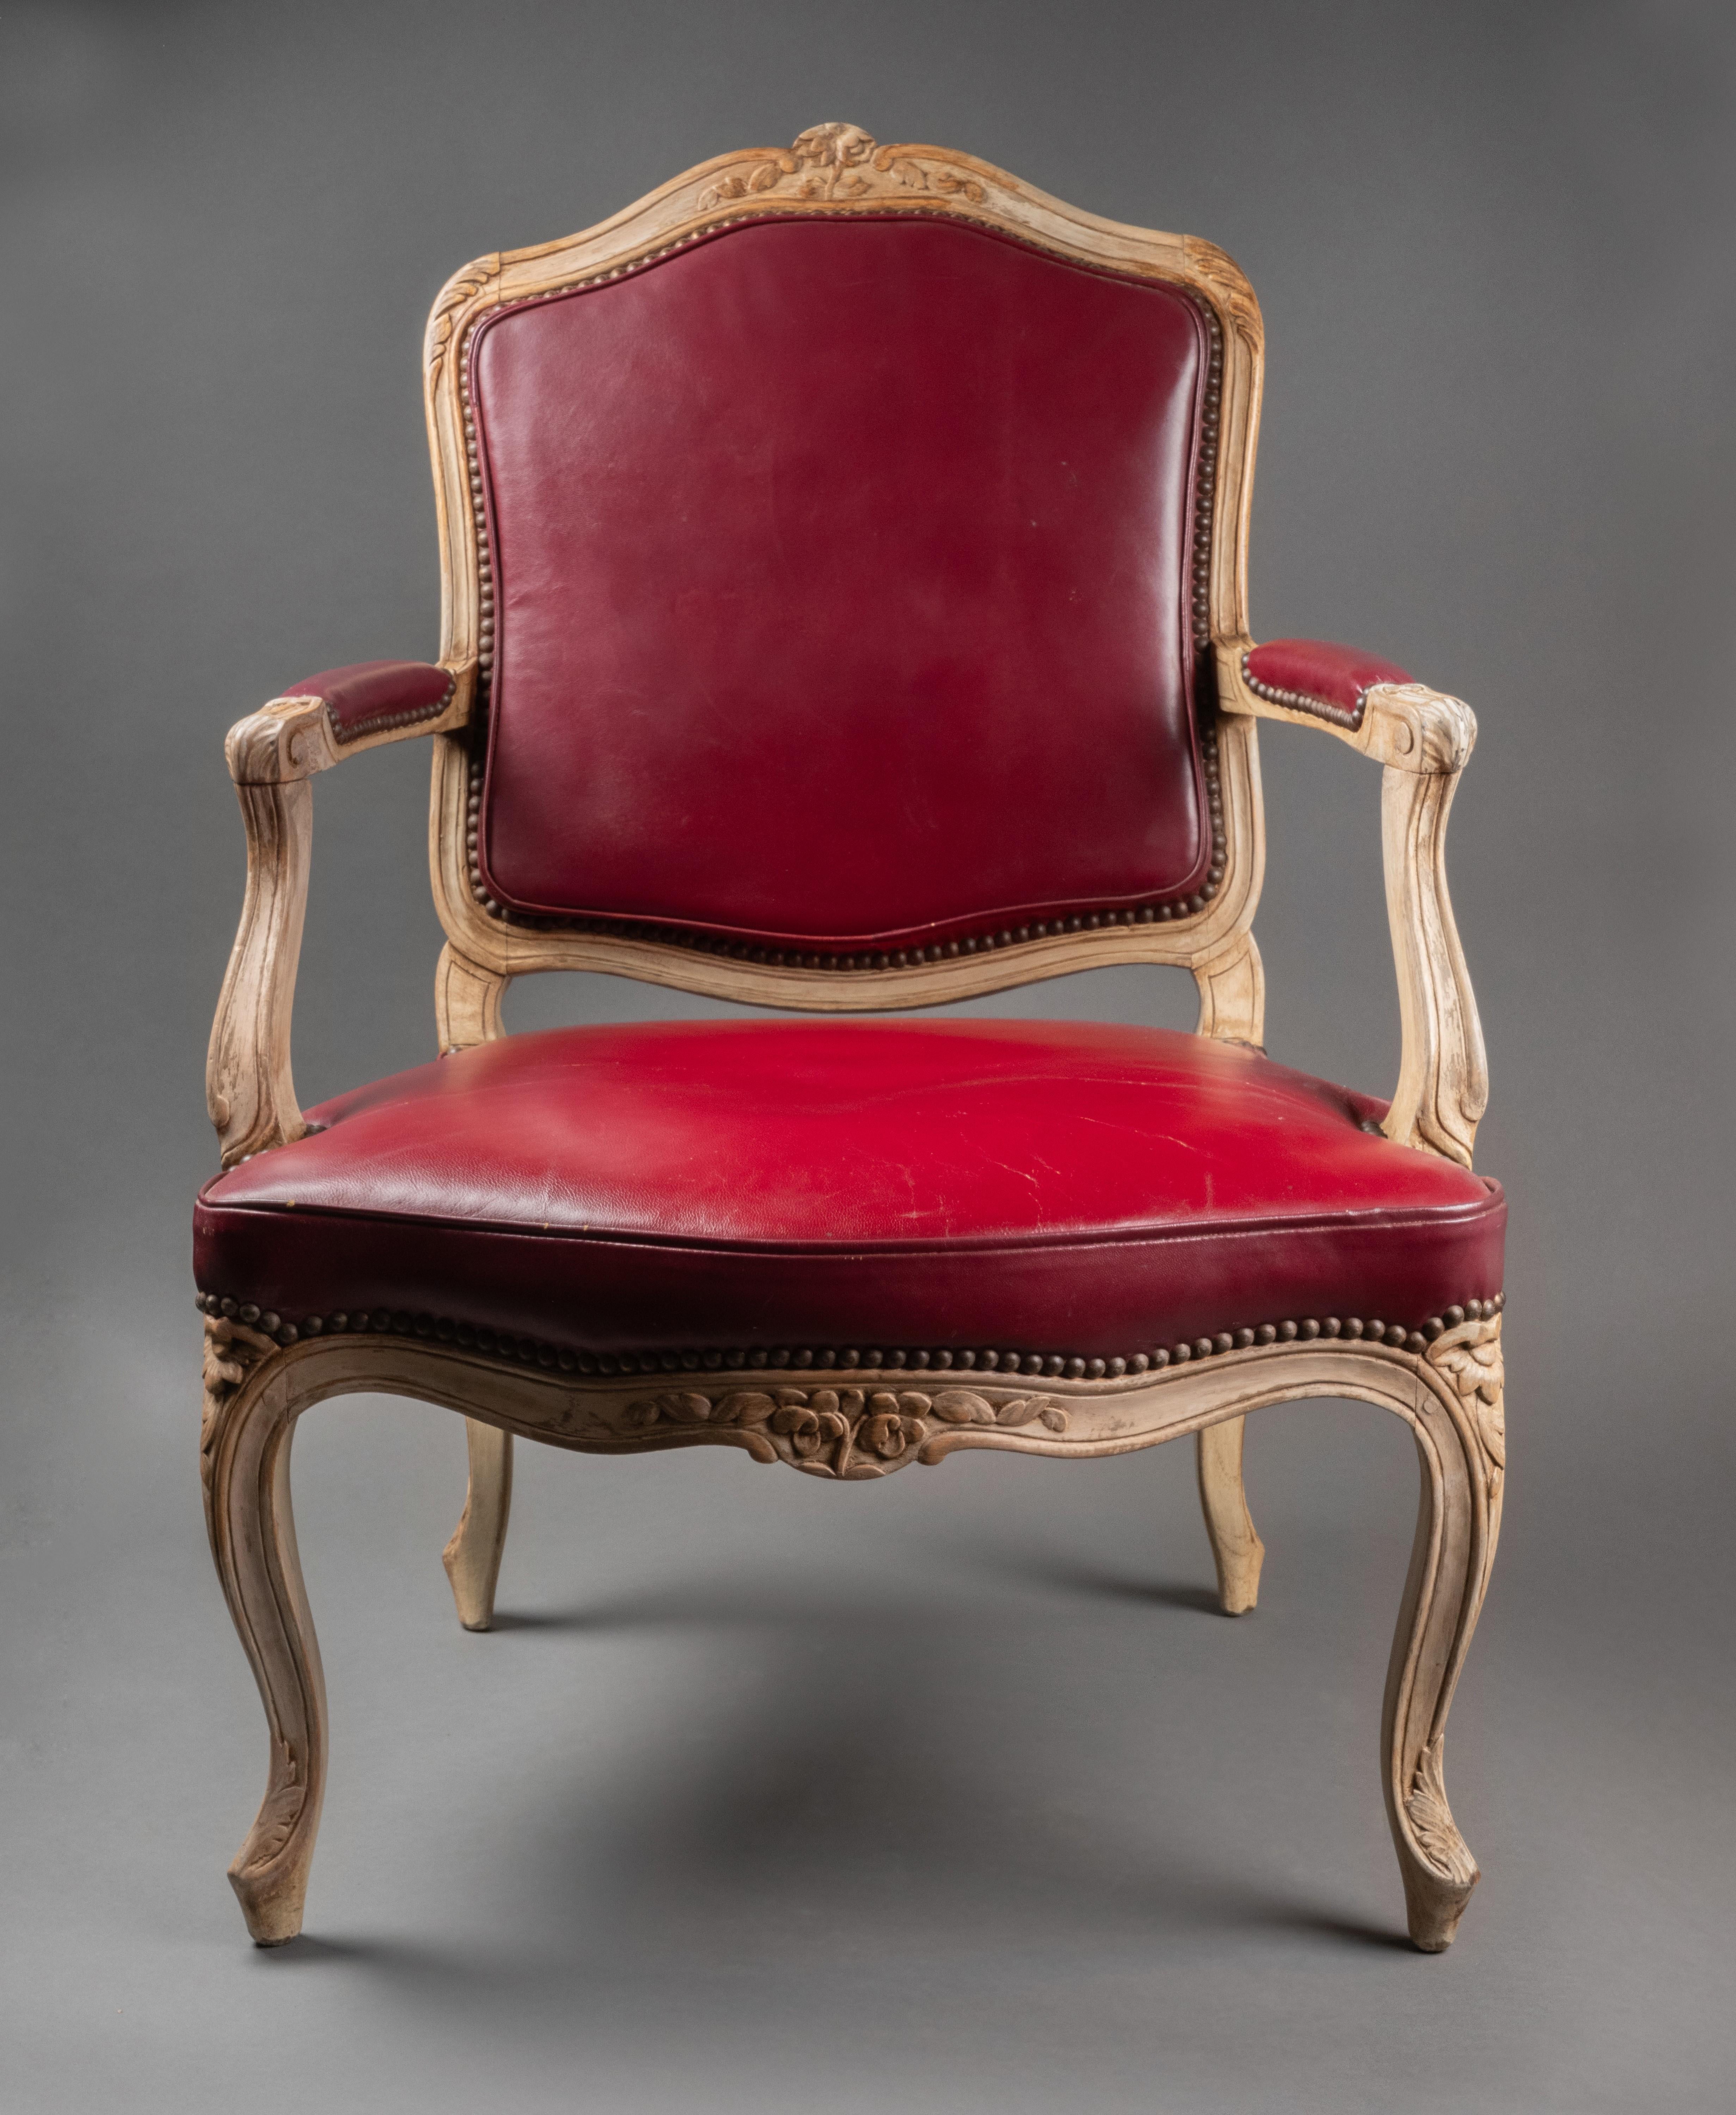 Vier lackierte Louis XV-Sessel aus Holz  um 1750
Mit Blumen und Blättern verziert, mit rotem Lederbezug.
18. Jahrhundert, Paris, Frankreich
Größe: Höhe 36,61 Zoll, Breite: 25,59 Zoll, Tiefe: 20,47 Zoll (93x65x52 cm)